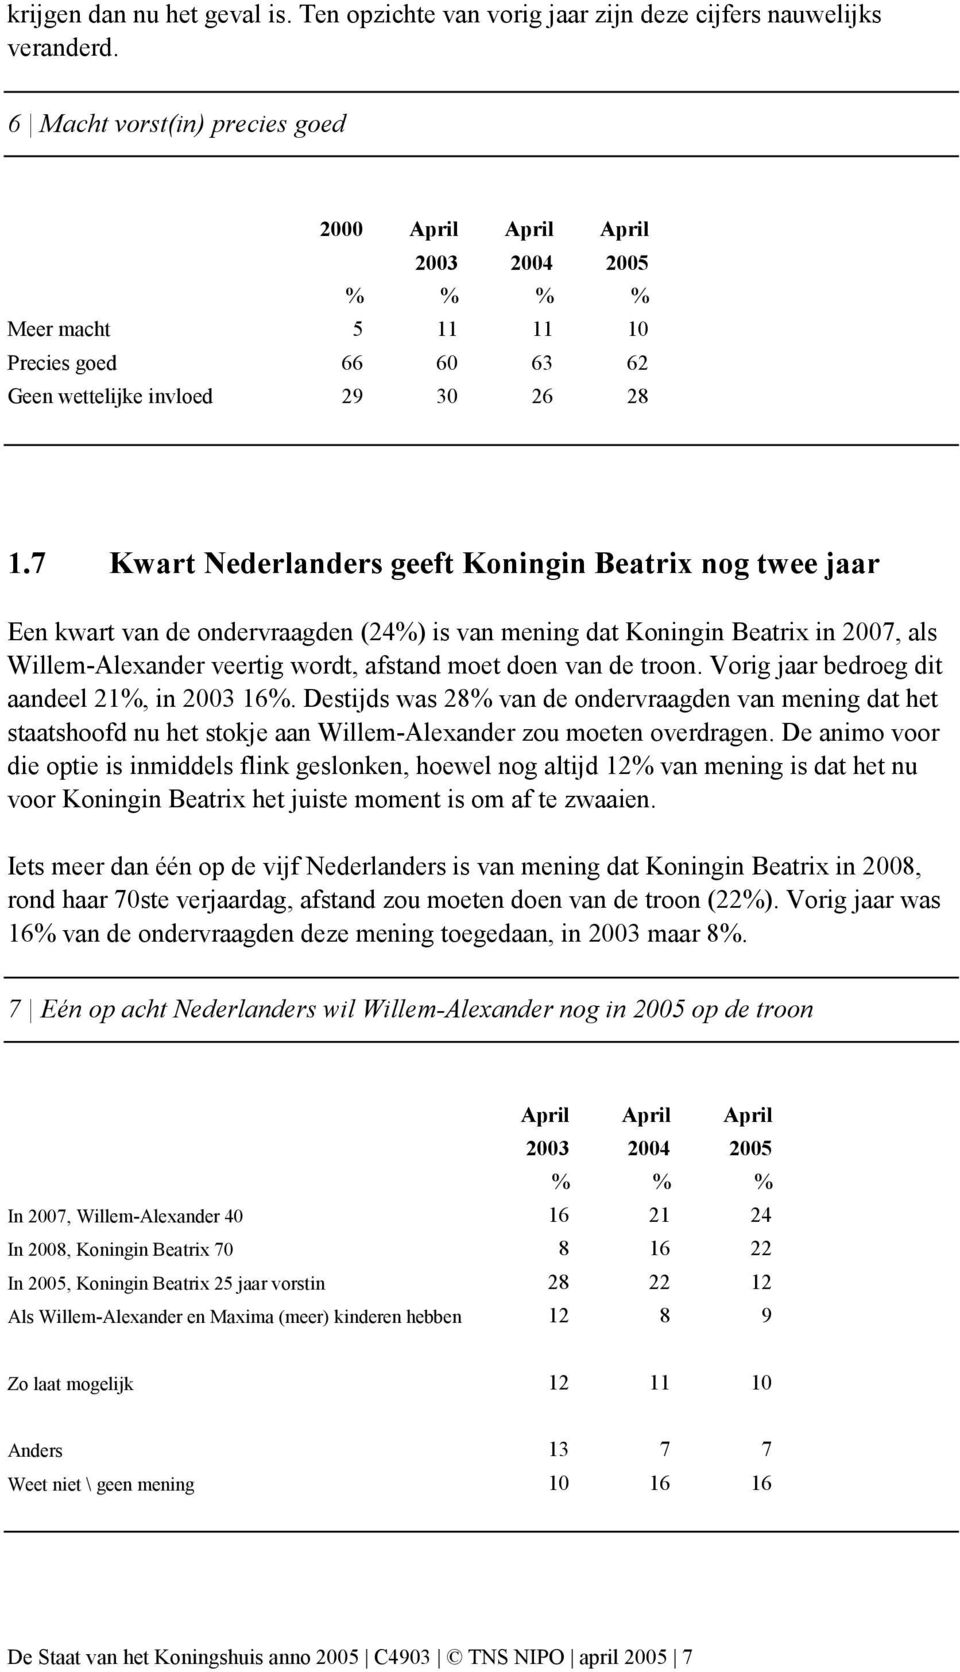 7 Kwart Nederlanders geeft Koningin Beatrix nog twee jaar Een kwart van de ondervraagden (24%) is van mening dat Koningin Beatrix in 2007, als Willem-Alexander veertig wordt, afstand moet doen van de